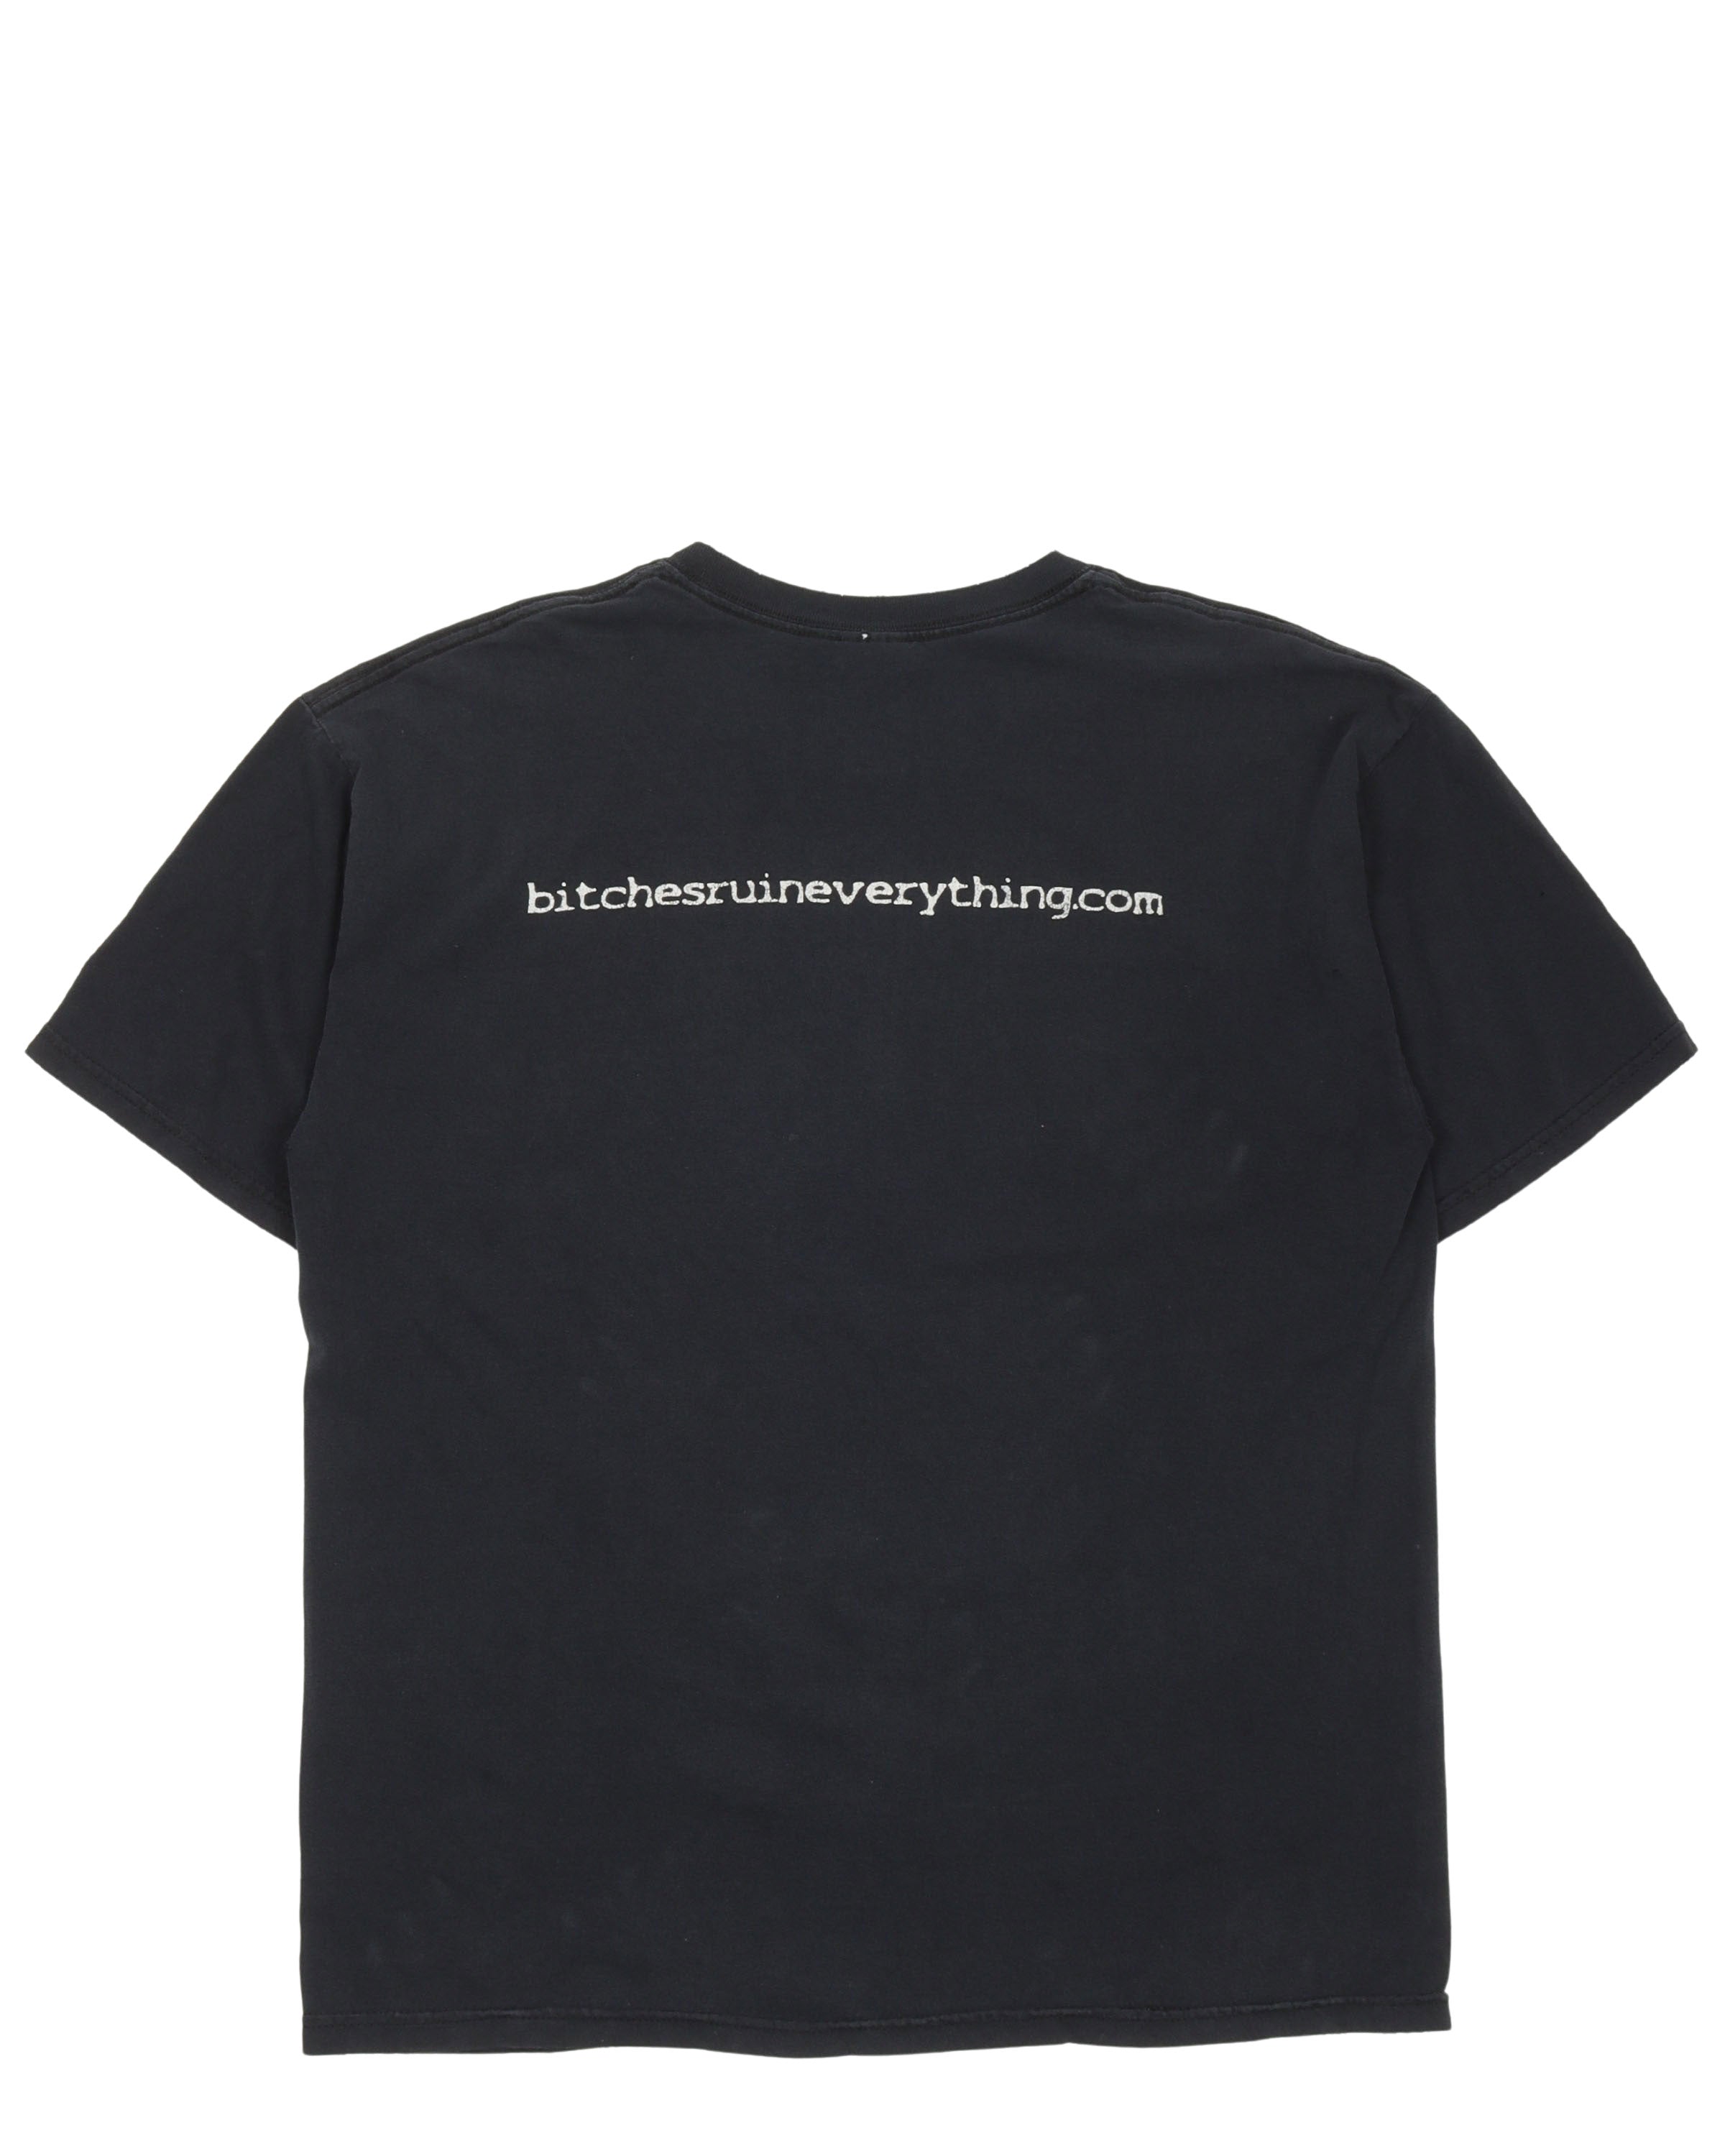 Bitchesruineverything.com T-Shirt